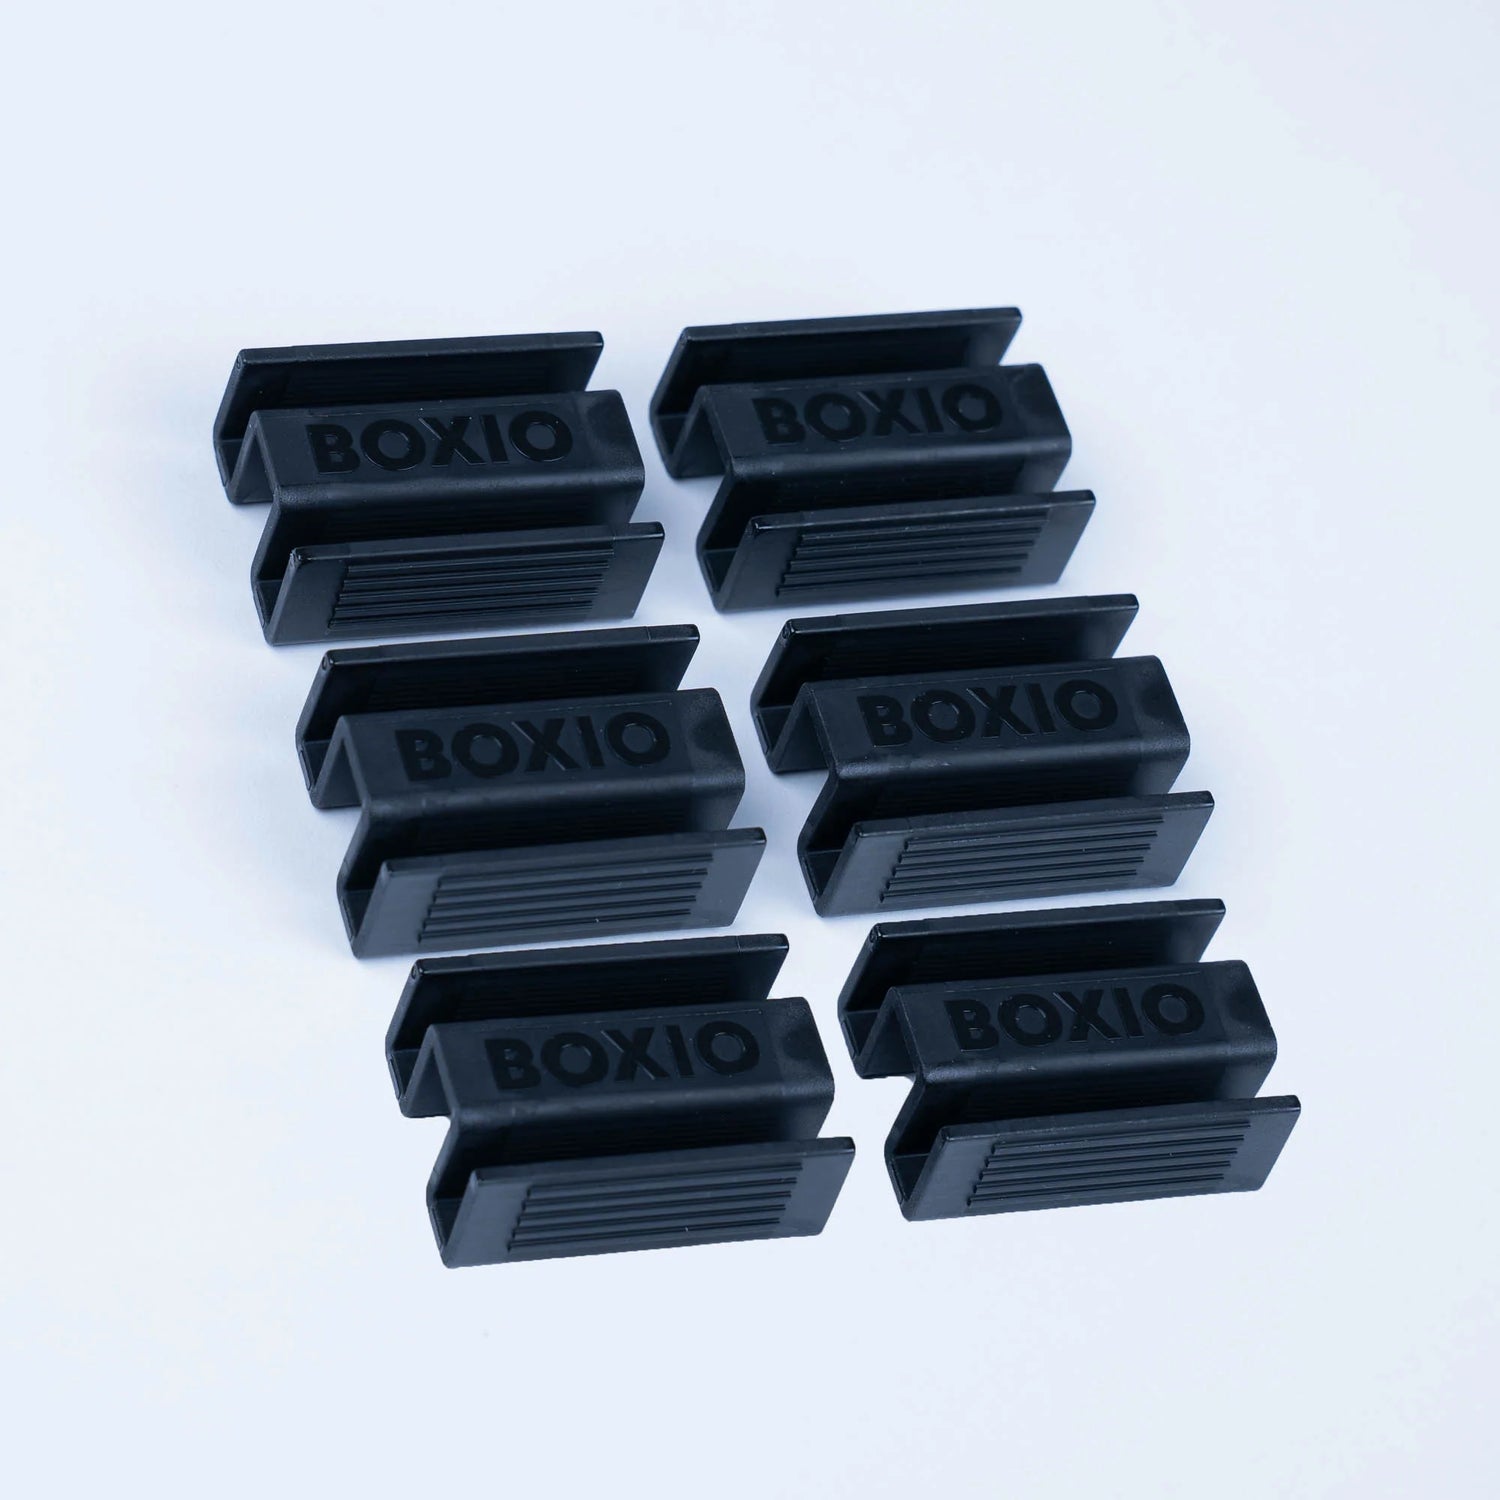 BOXIO SecureStack CLIPS - Die ultimative Stapelhilfe für dein Boxio